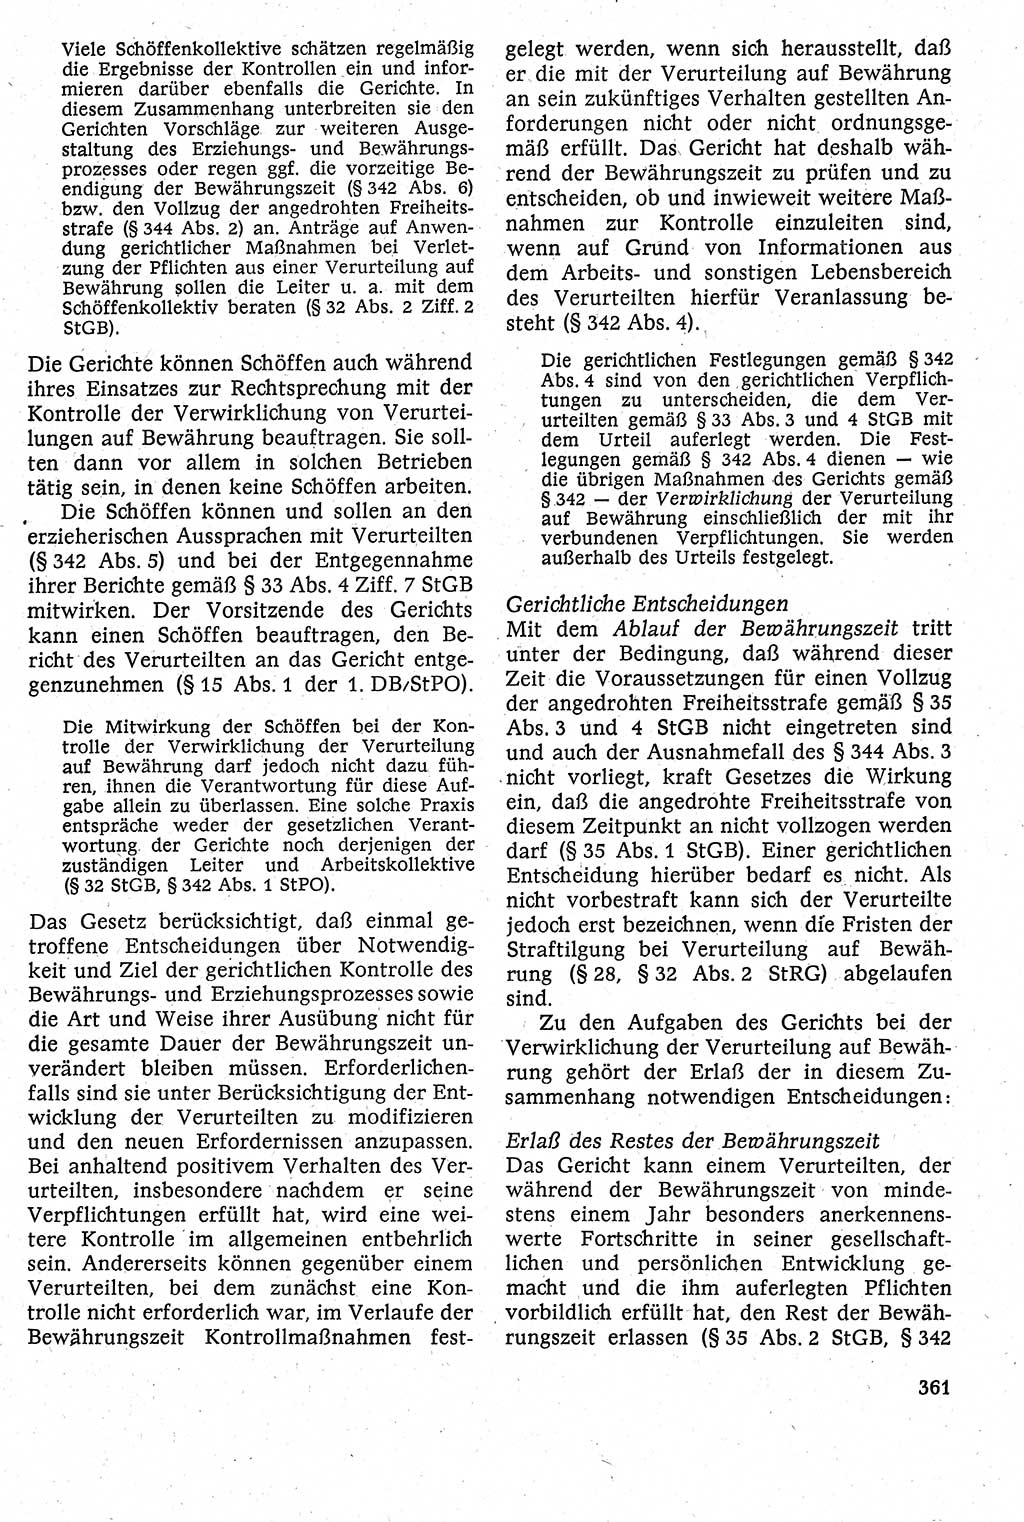 Strafverfahrensrecht [Deutsche Demokratische Republik (DDR)], Lehrbuch 1982, Seite 361 (Strafverf.-R. DDR Lb. 1982, S. 361)